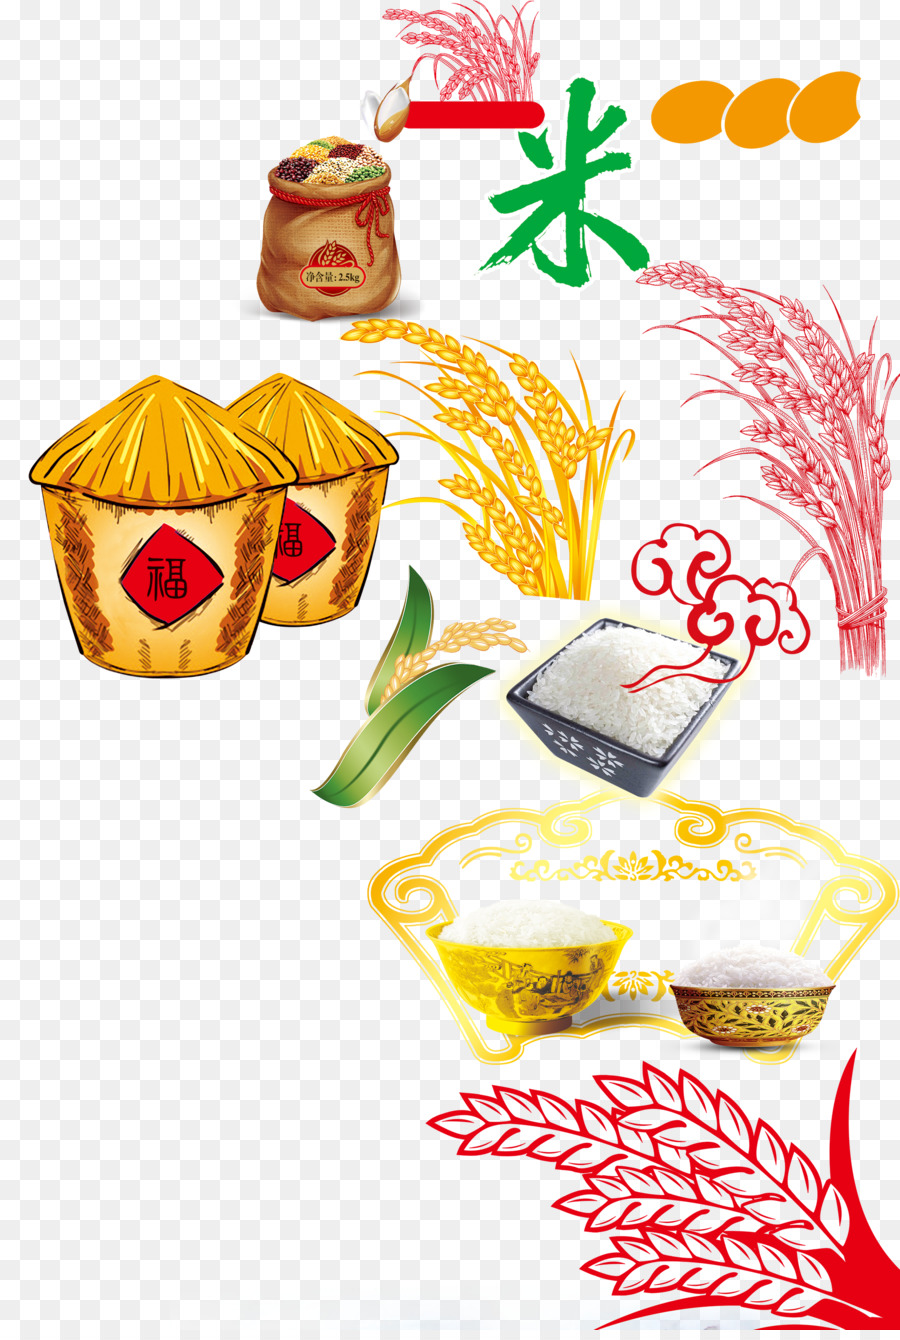 Grauds Reis Illustration - Chinesisch-grain white rice creatives